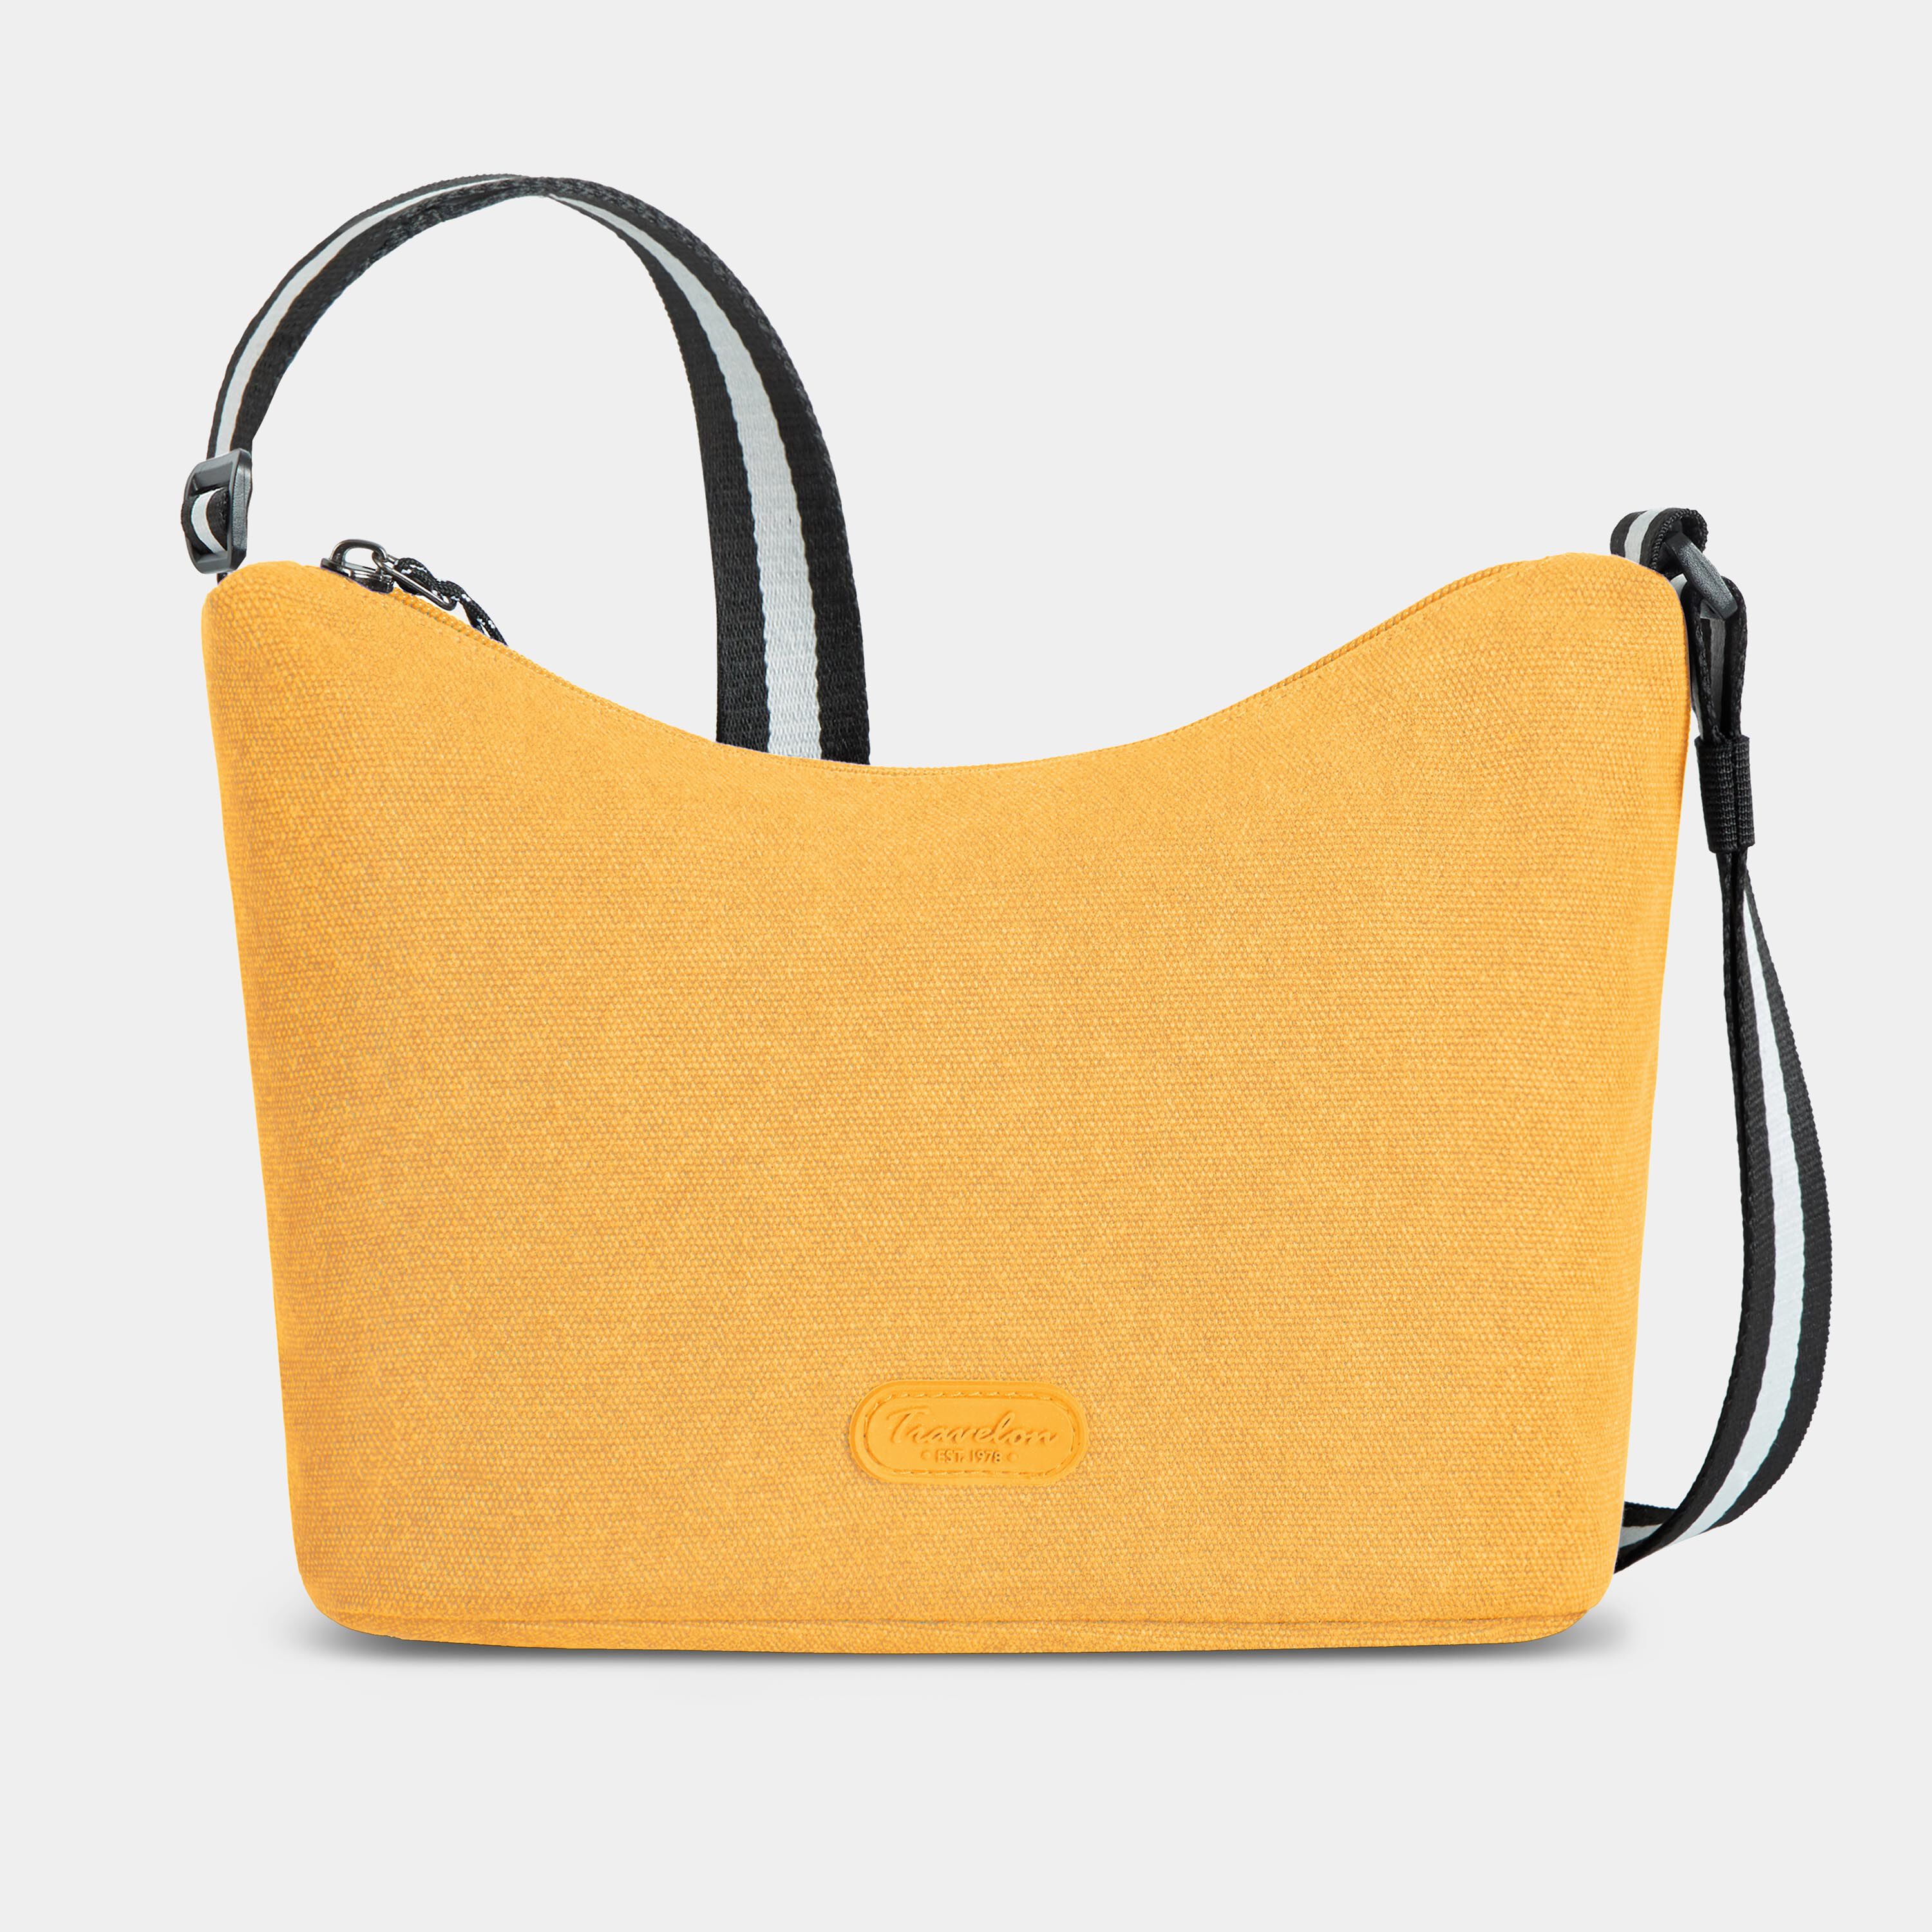 Buy Designer Sling Bag 7 Inch Online at Best Prices